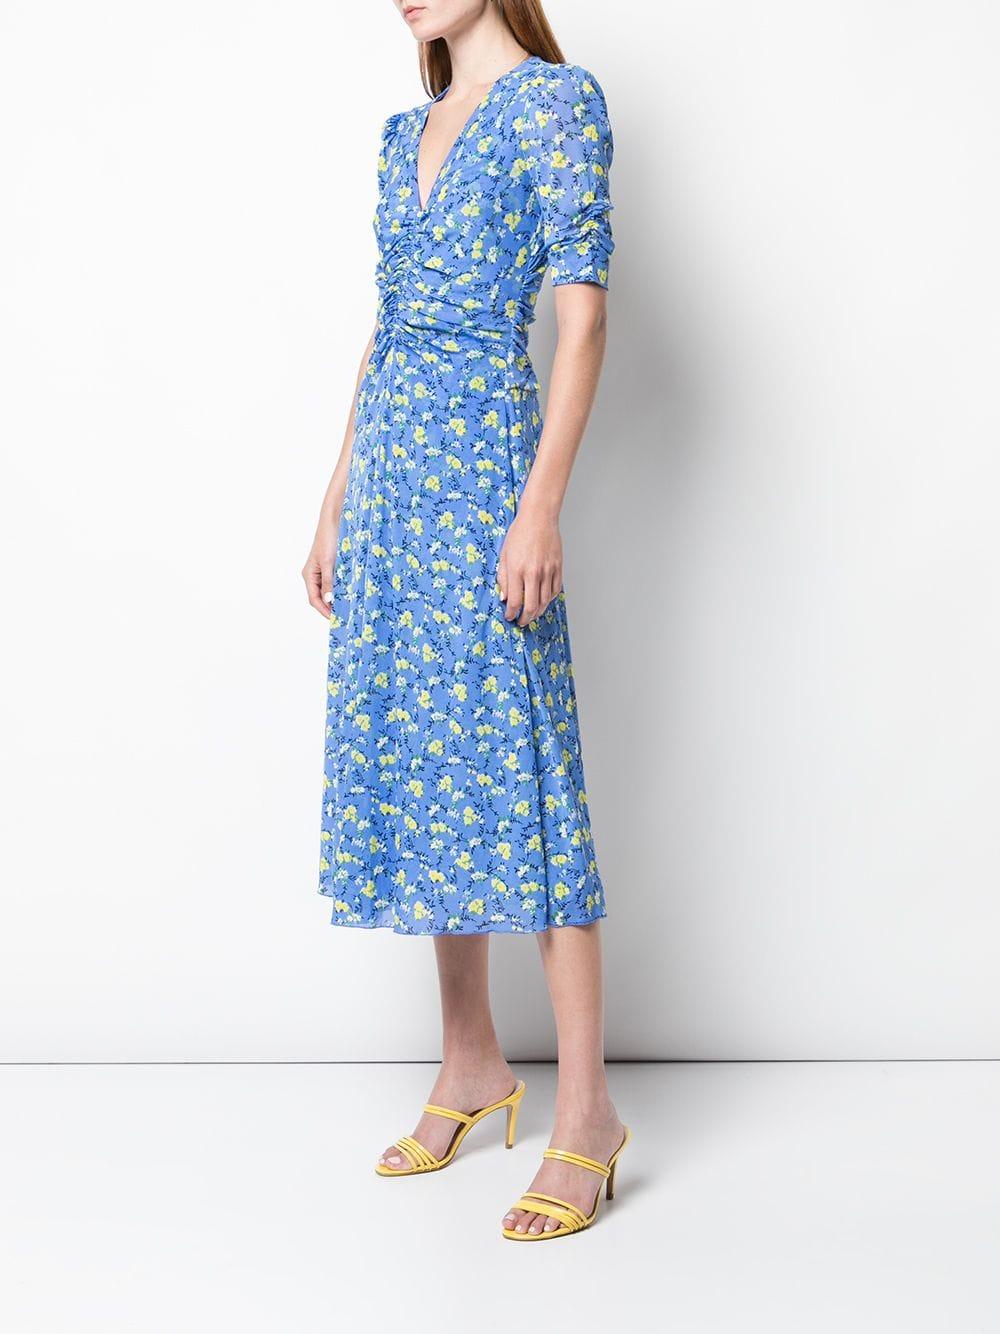 Diane von Furstenberg Koren Floral Print Dress in Blue - Lyst